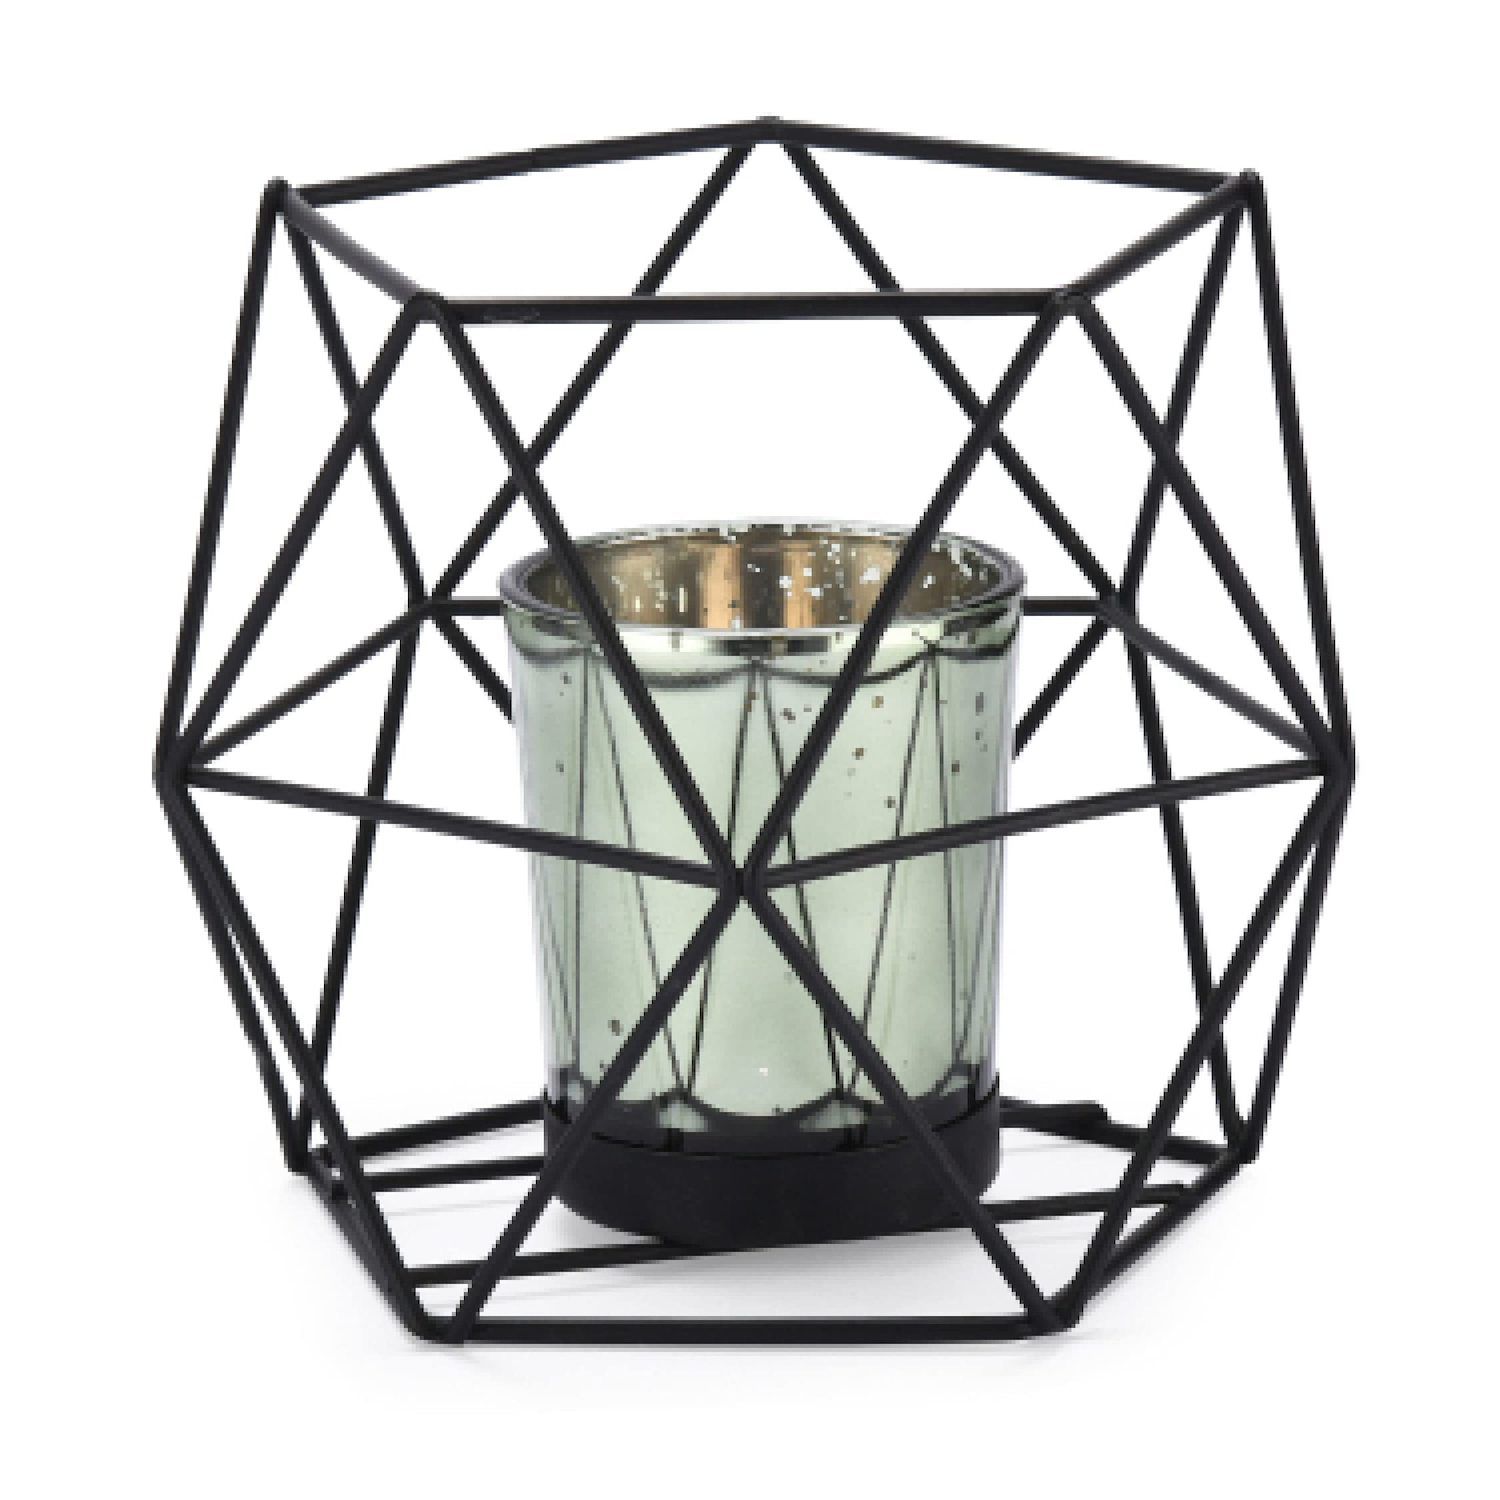 Геометрический подсвечник для чайного светильника — декоративный центральный элемент для мероприятий и домашнего декора